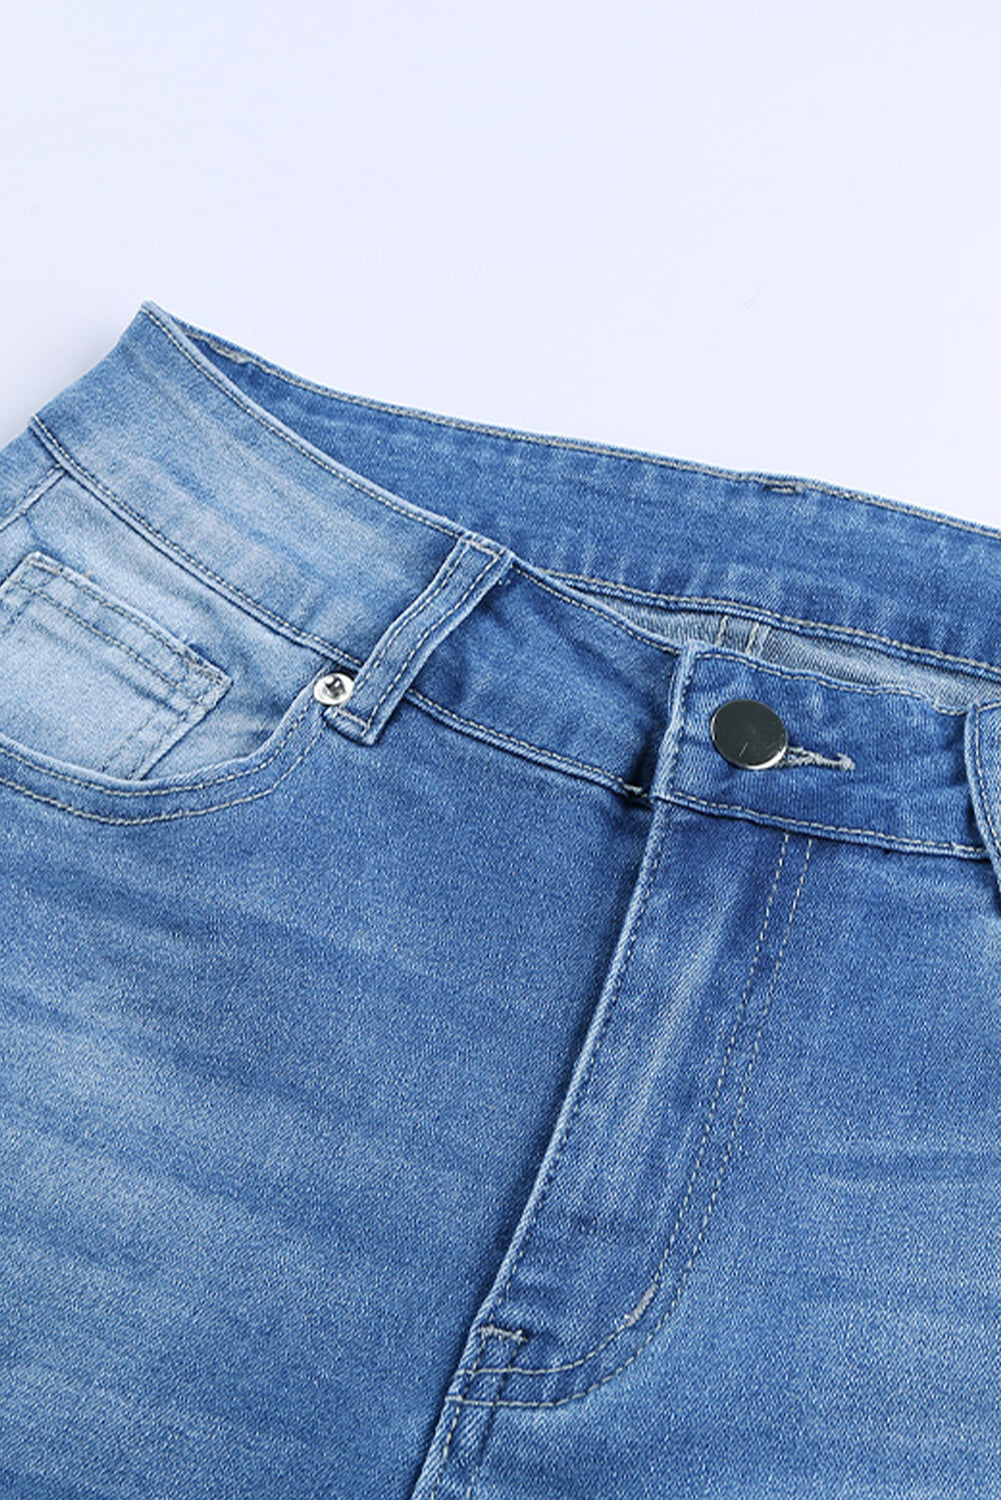 Verwaschene Jeans mit mittelhohem Bund und Löchern